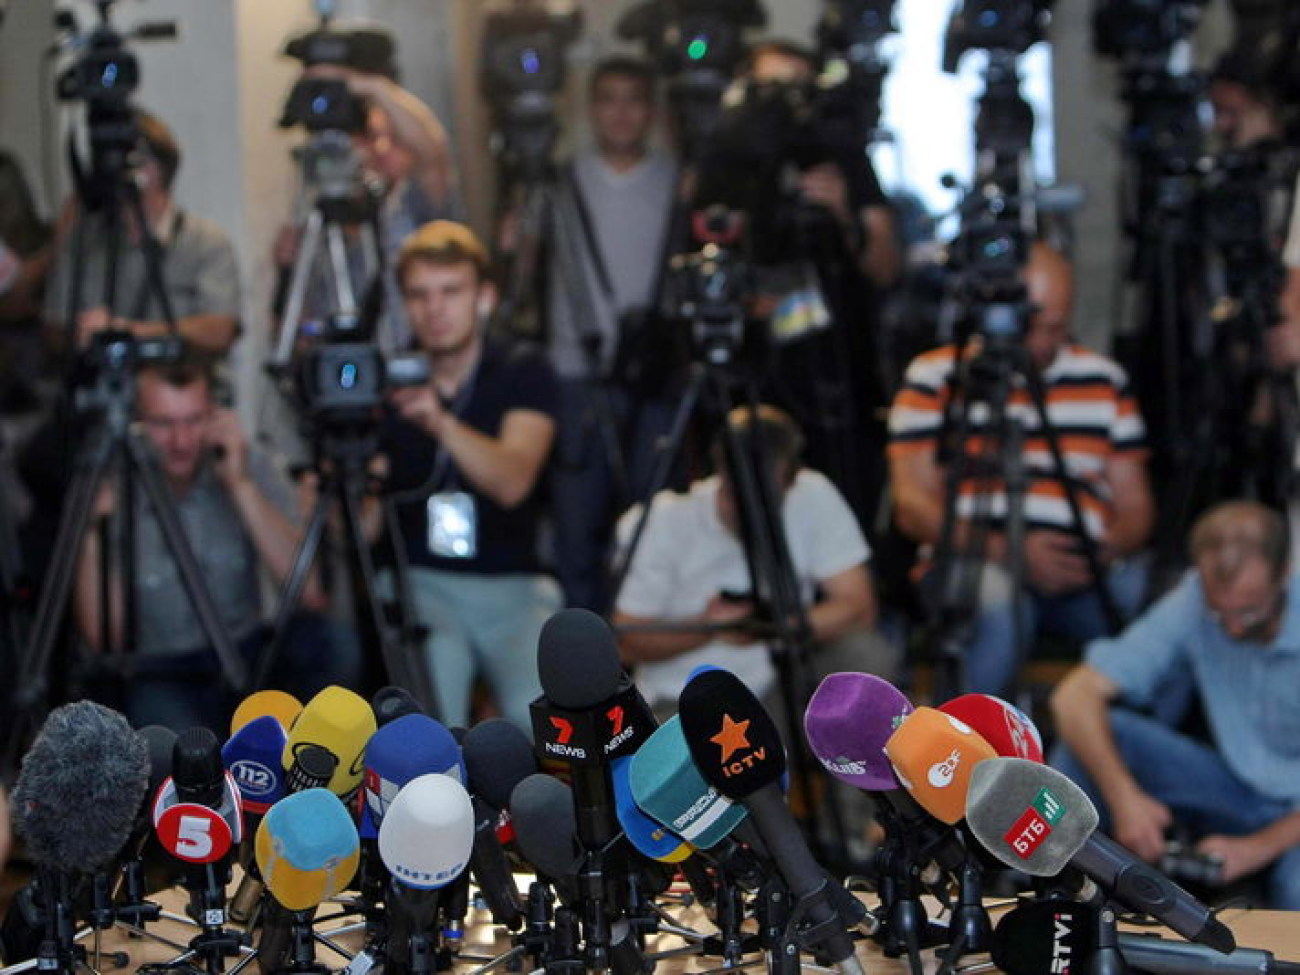 Тяжела и неказиста&#8230; как журналисты ждут известий от депутатов, 31 июля 2014г.